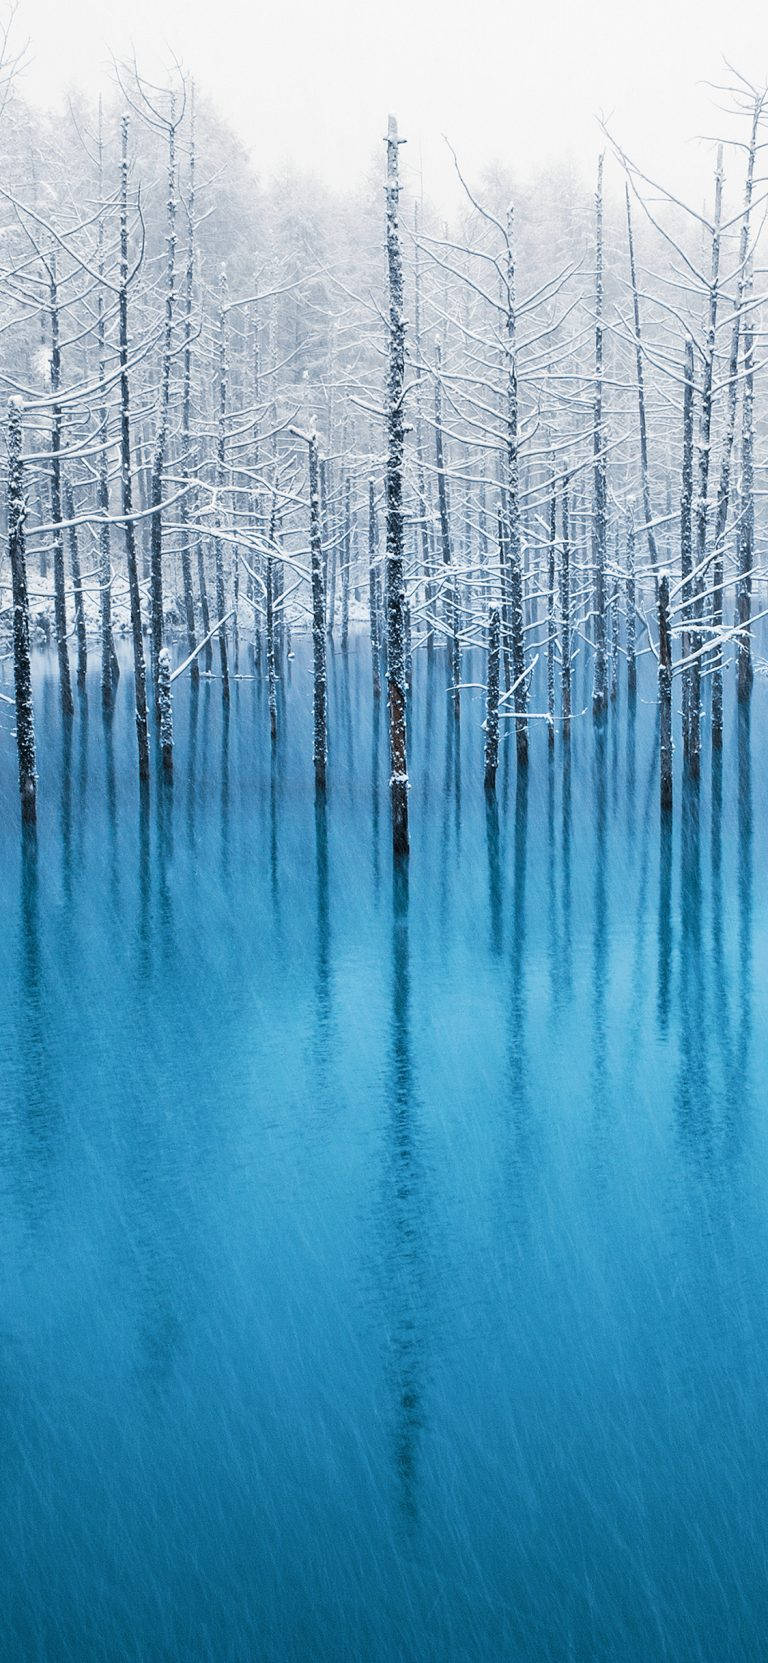 Snow Trees Lake Original iPhone 4 Wallpaper